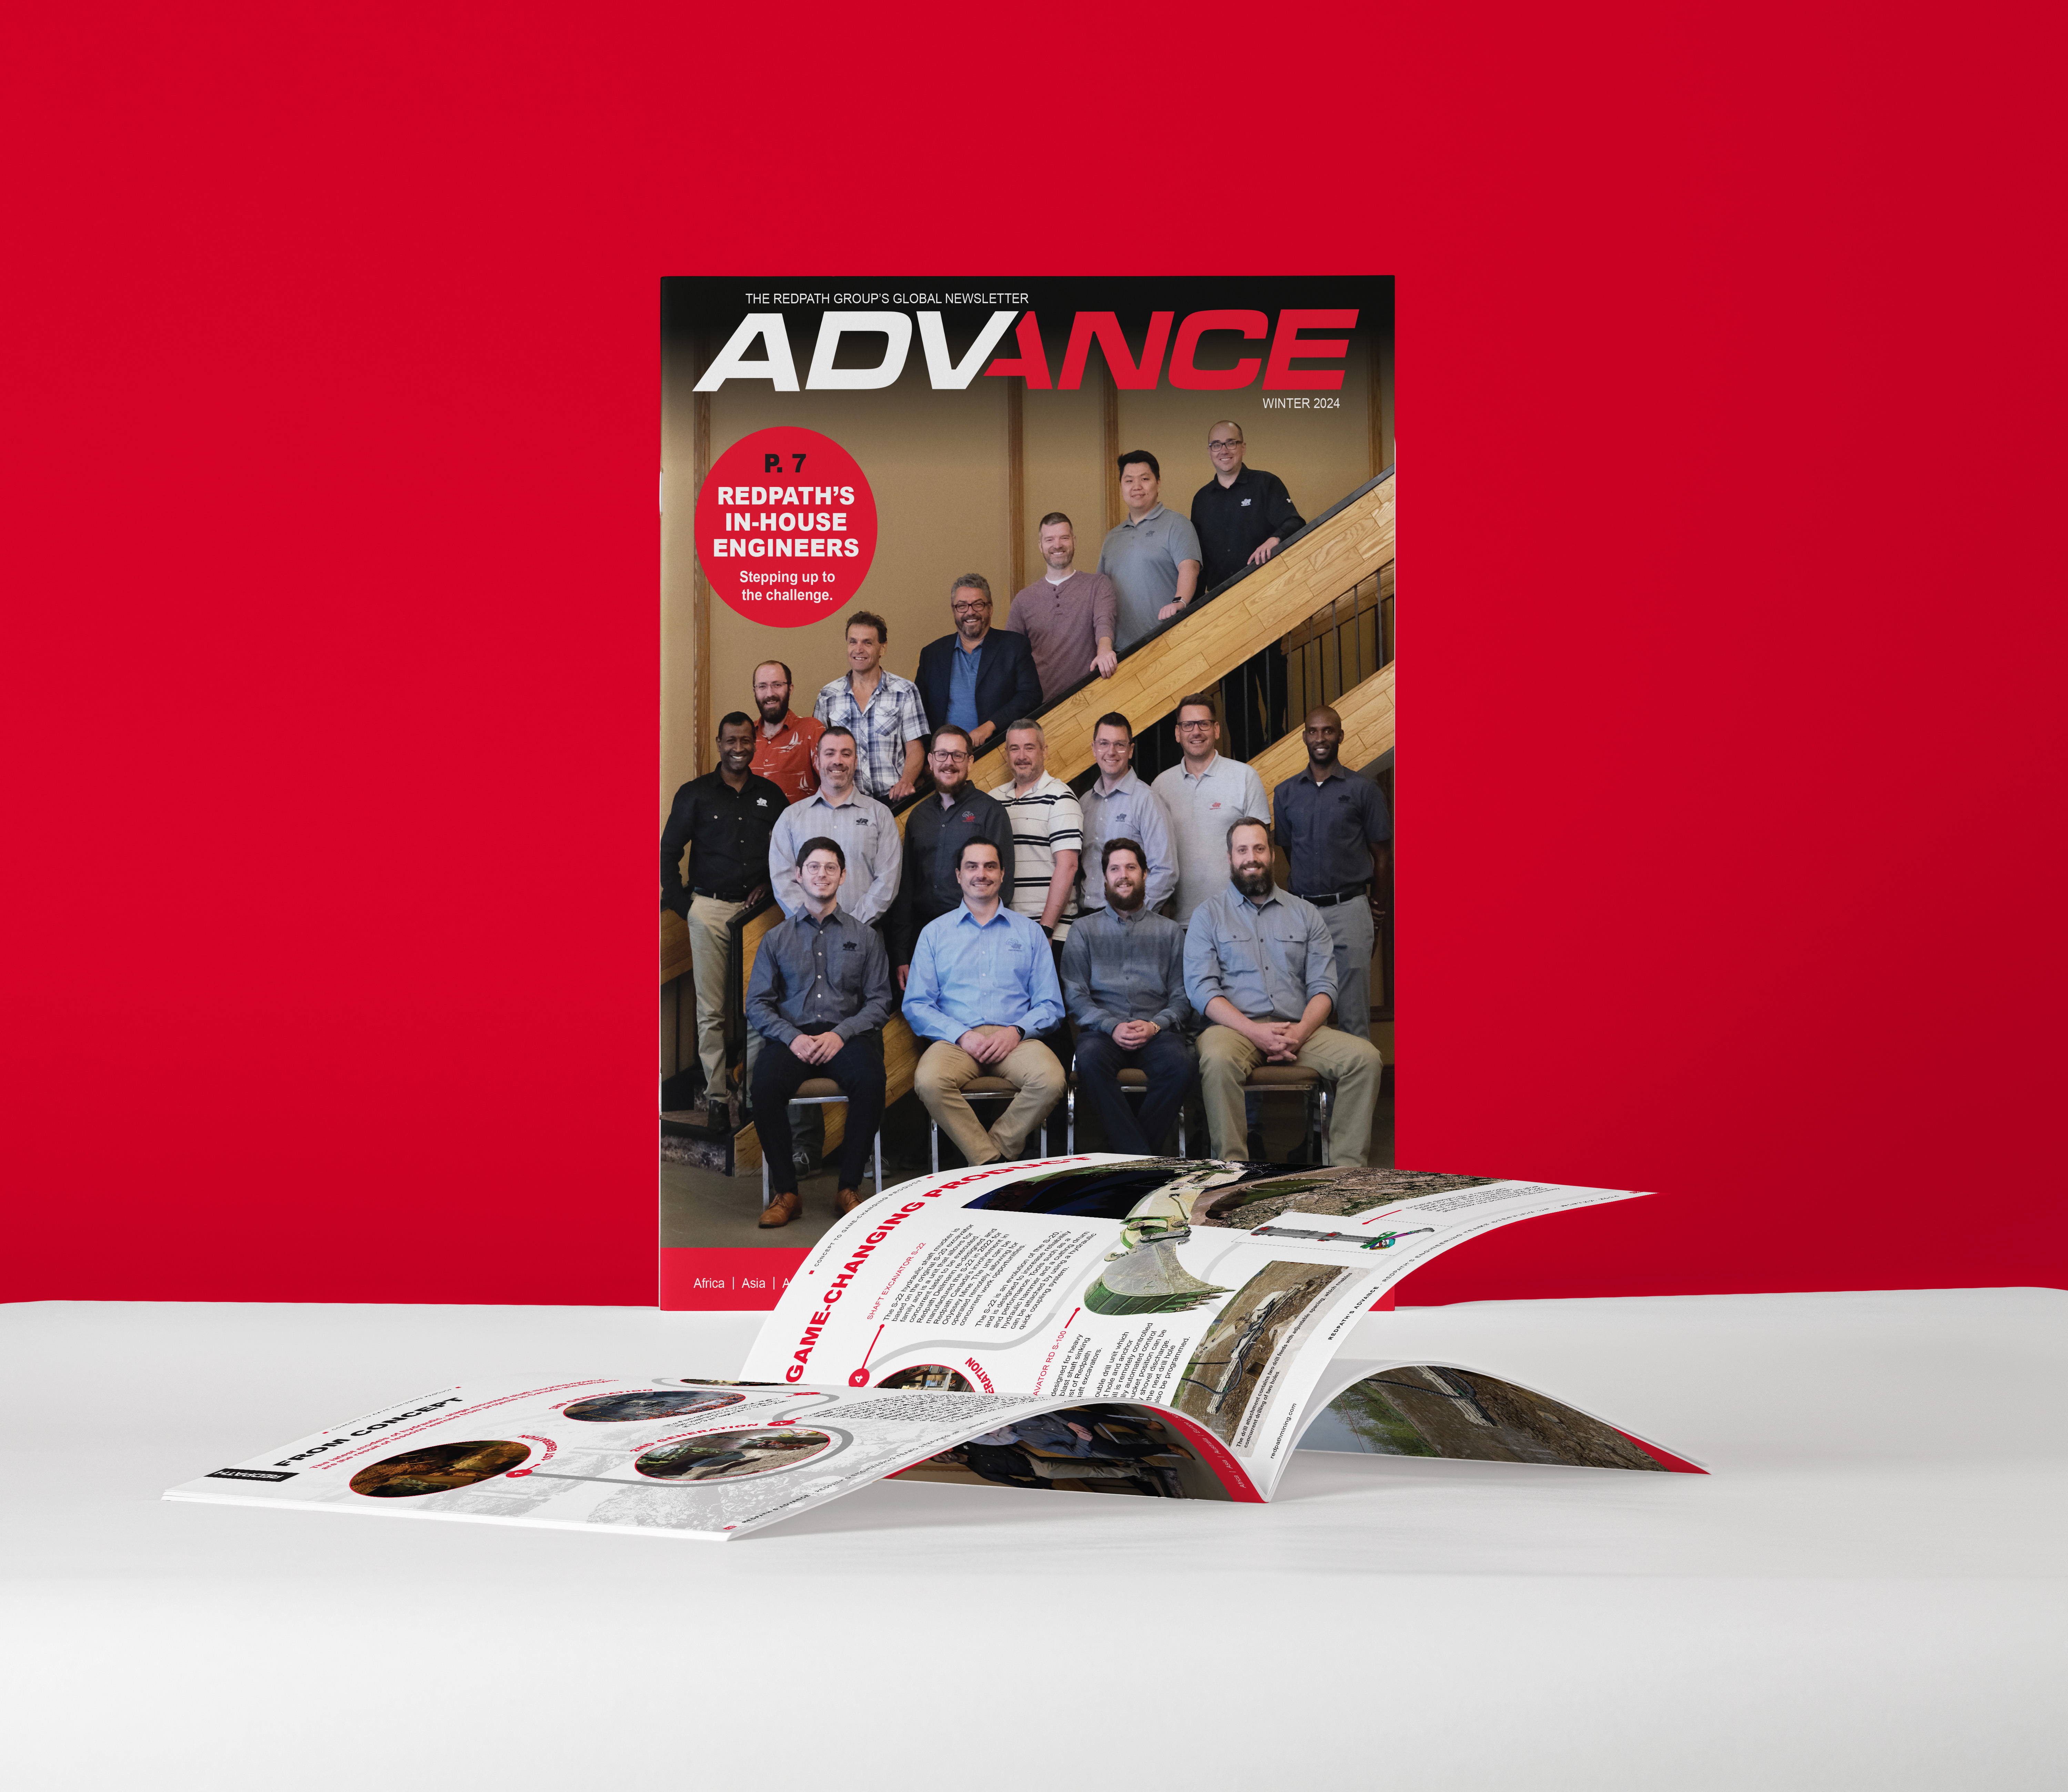 Couverture de la publication Advance montrant les ingénieurs de Redpath alignés sur un escalier.